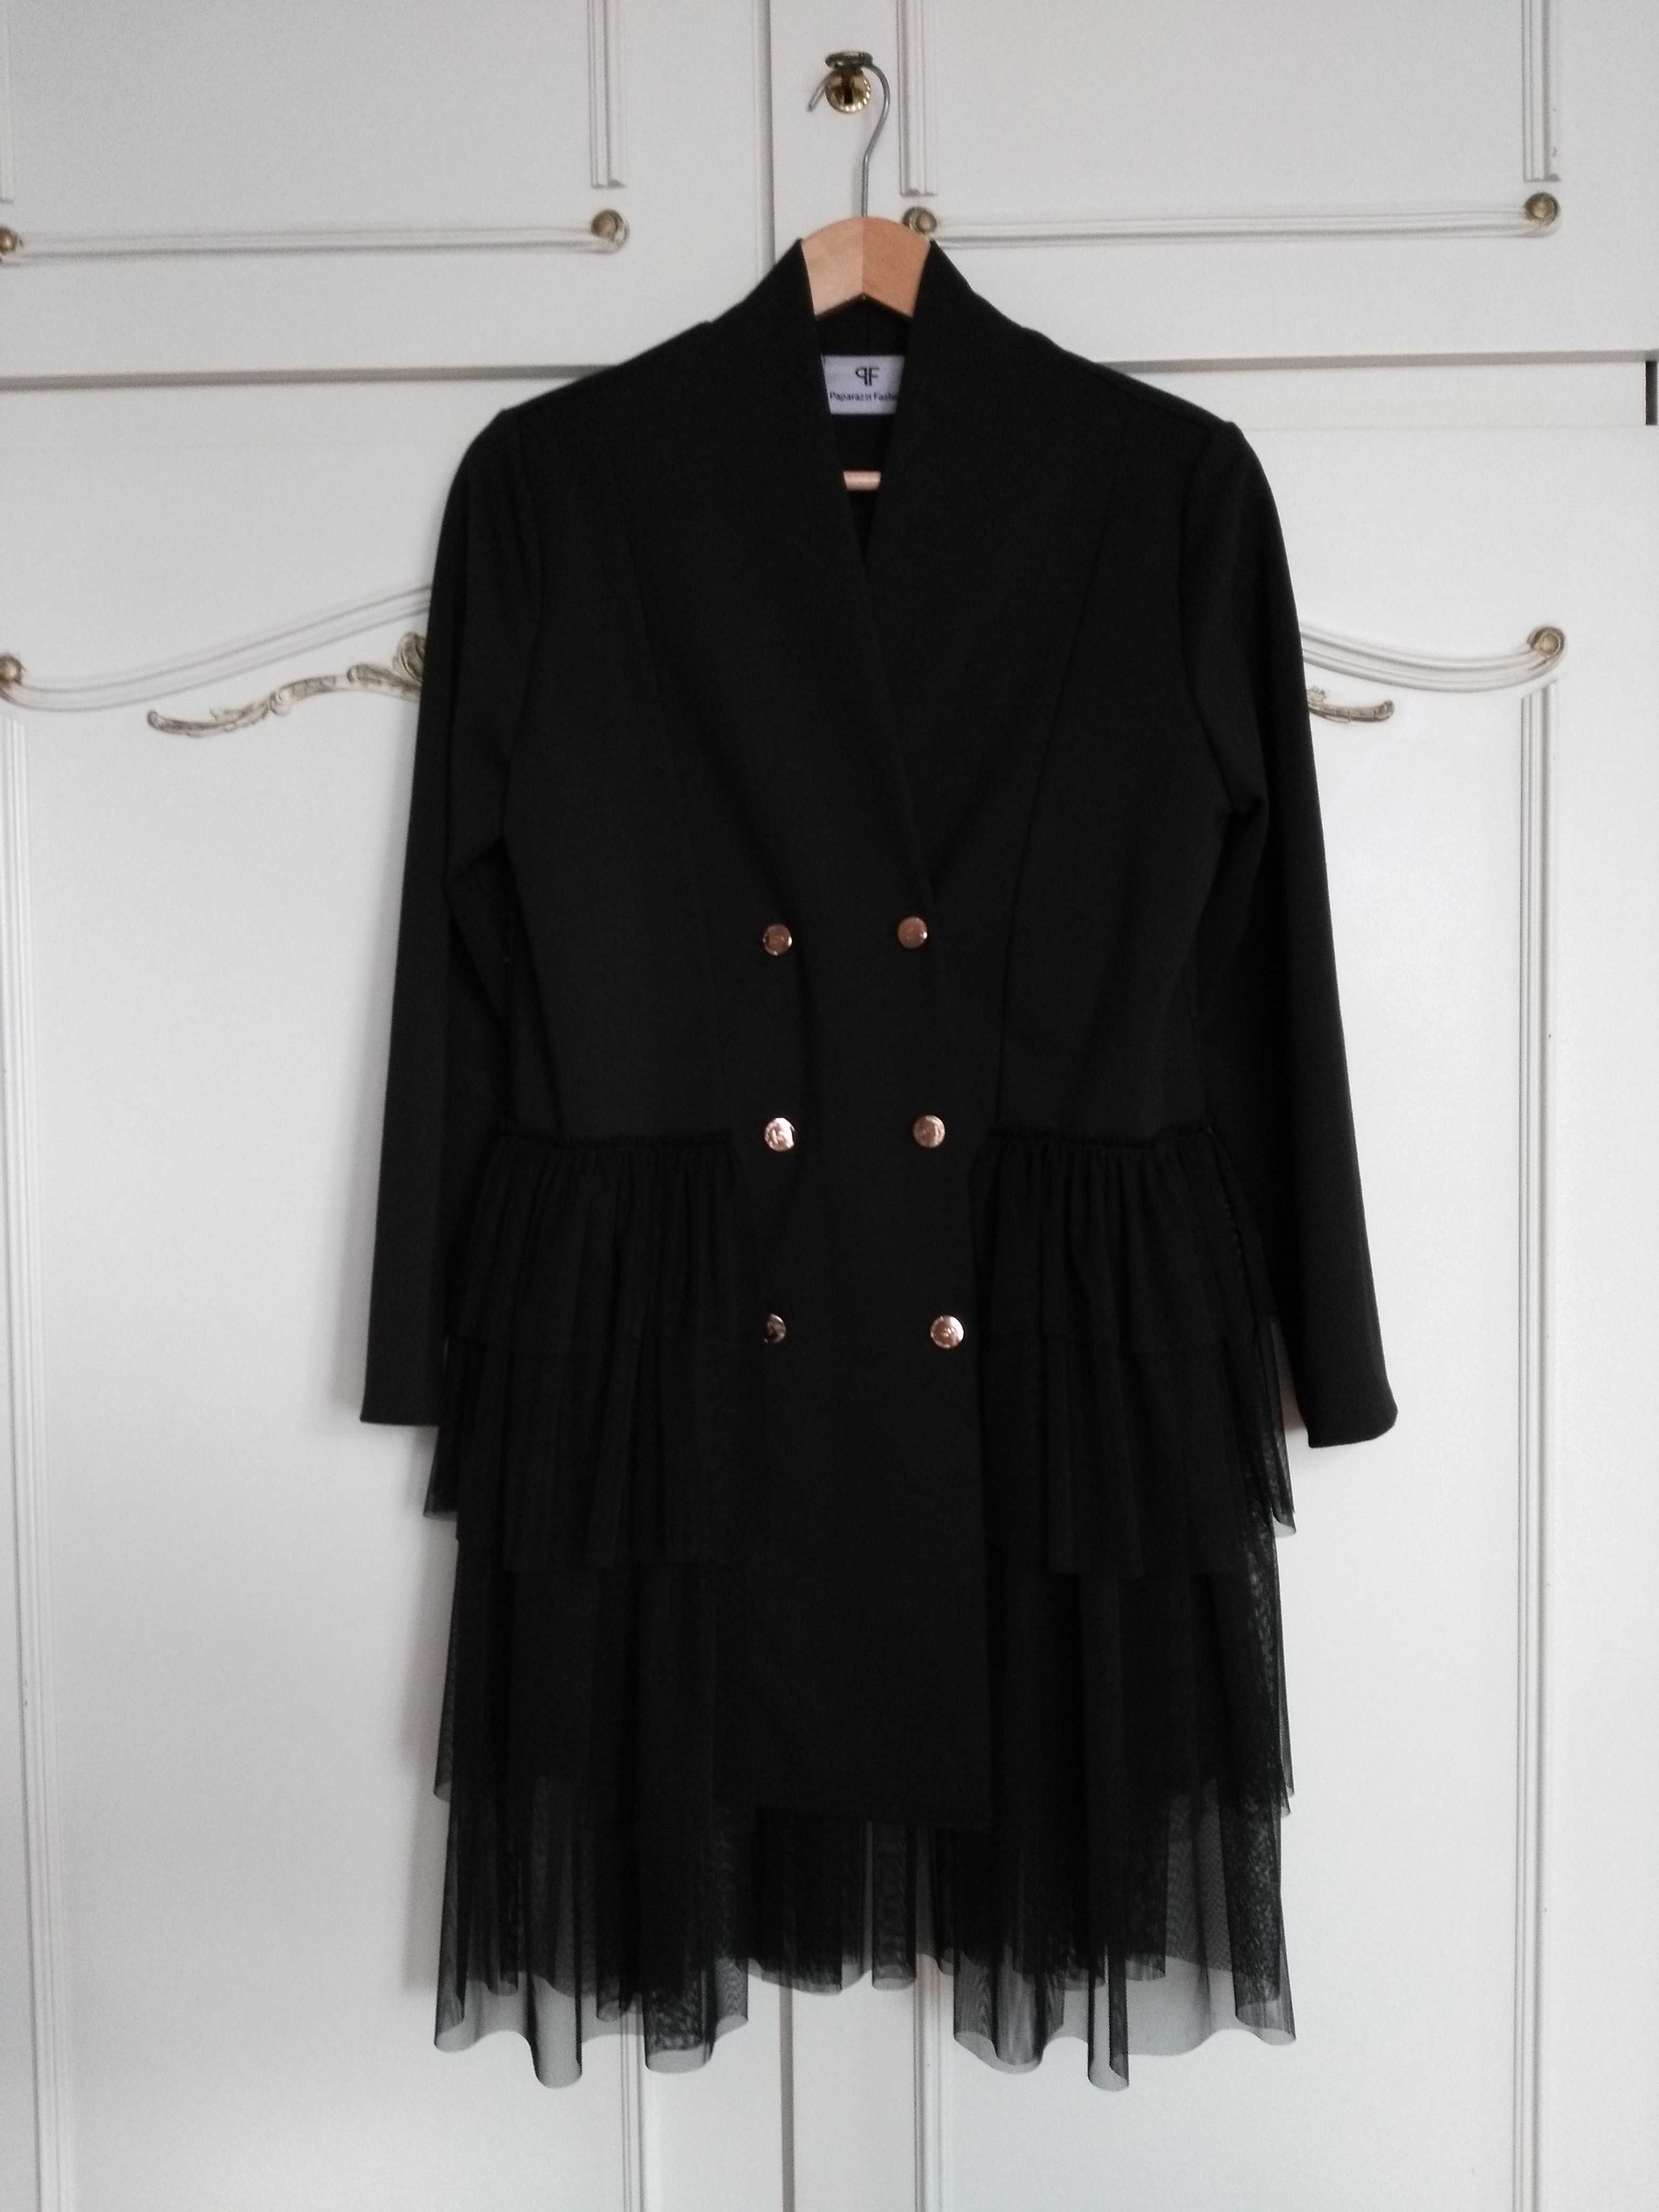 Paparazzi Fashion sukienka czarna tiul  falbany sukienko marynarka